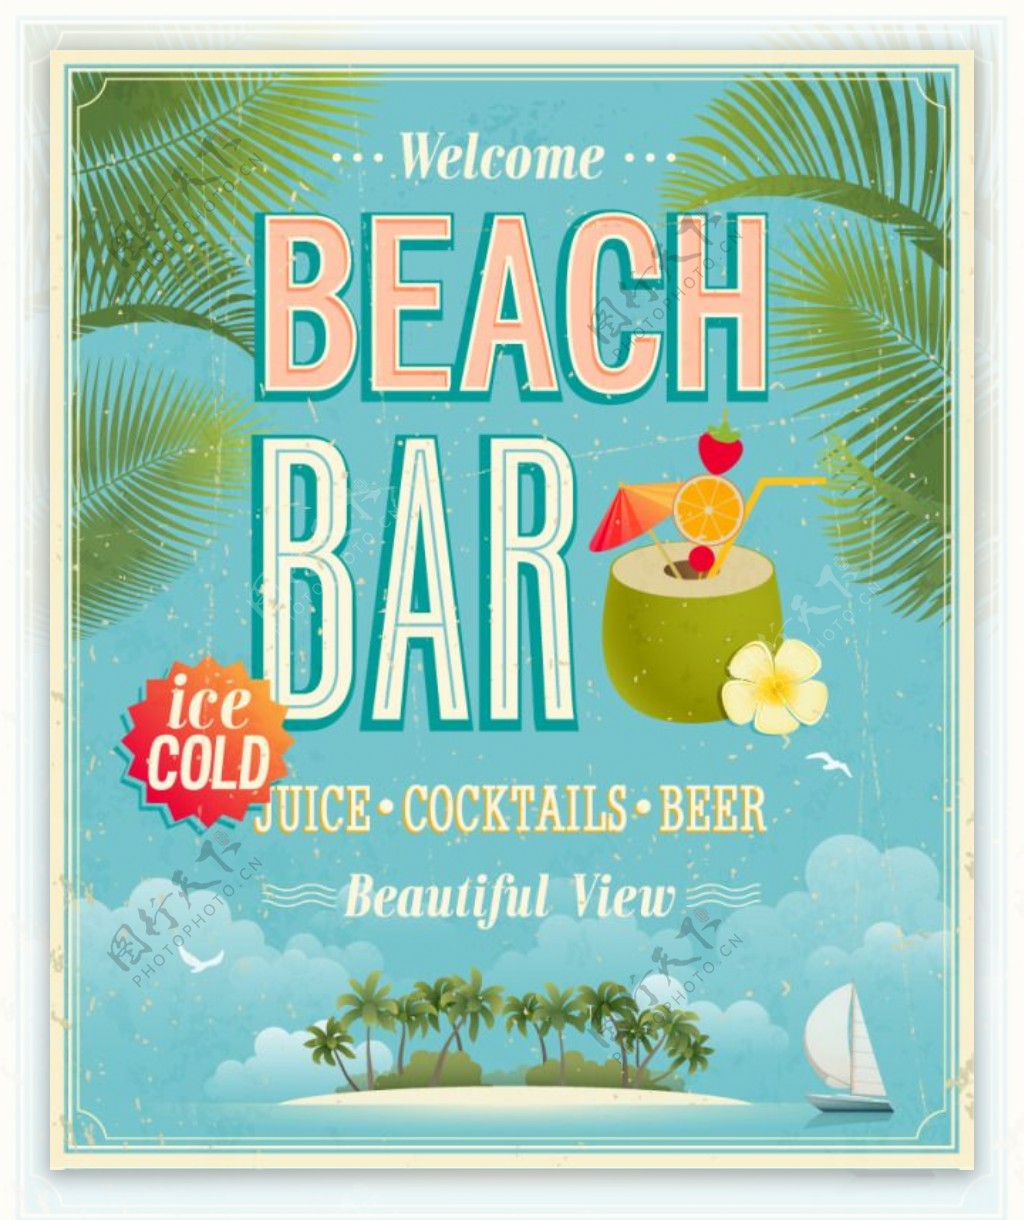 悠闲海滩酒吧海报矢量素材